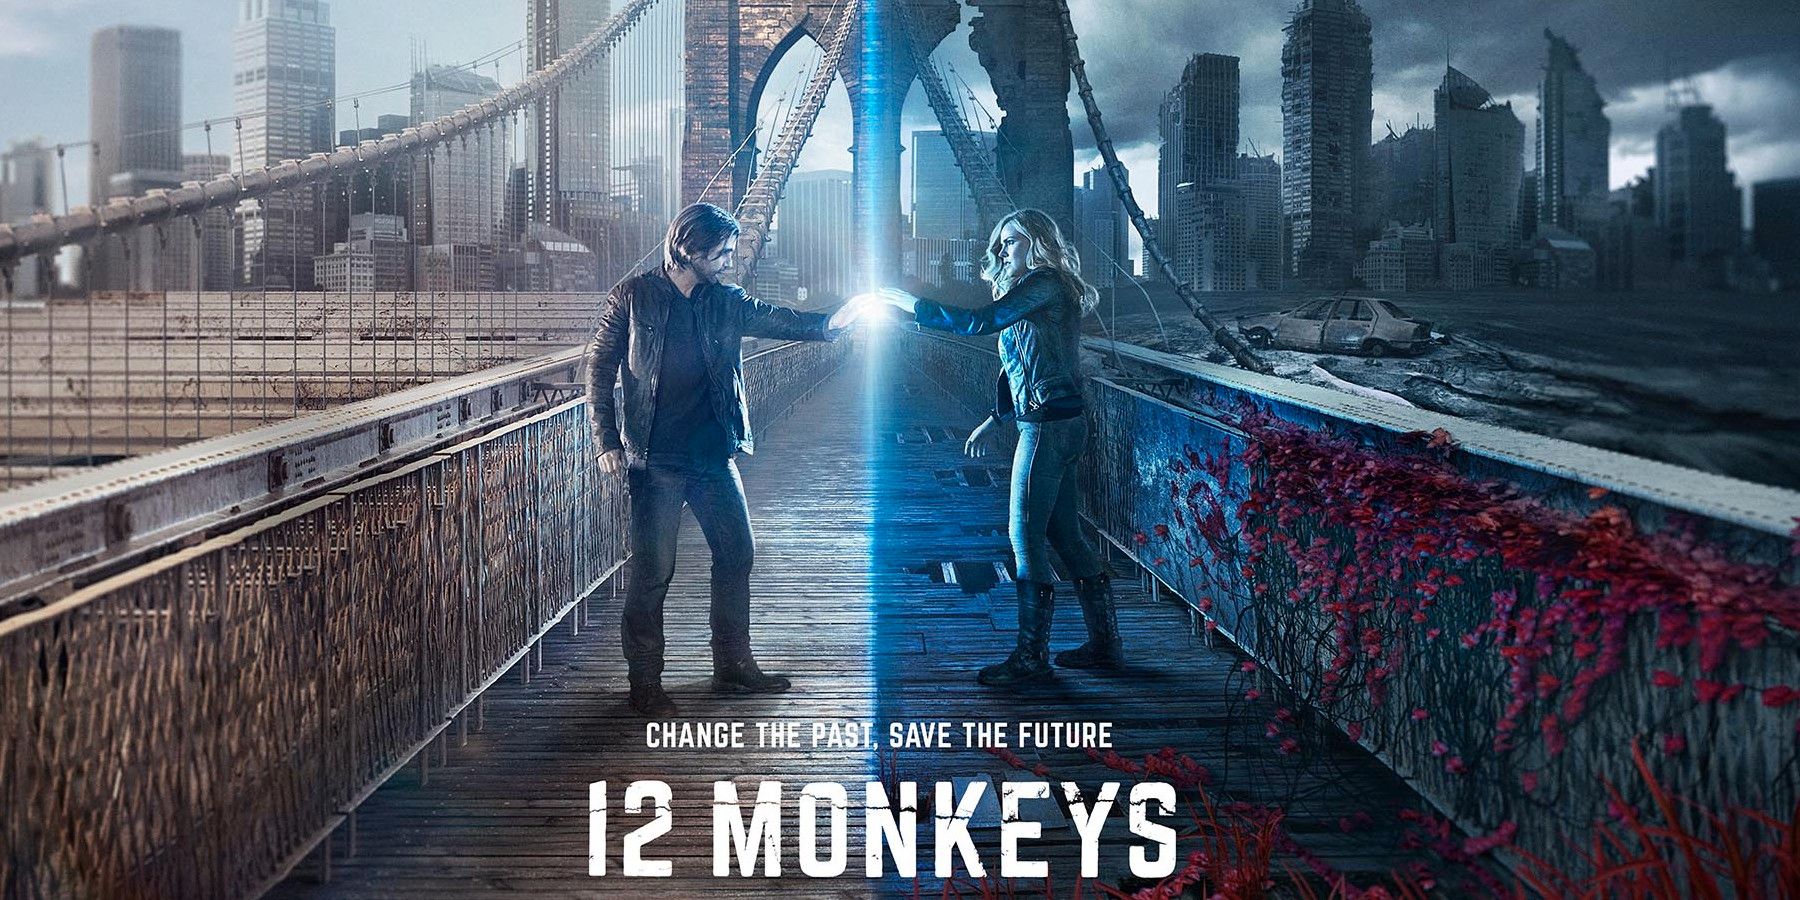 12 monkeys affisch